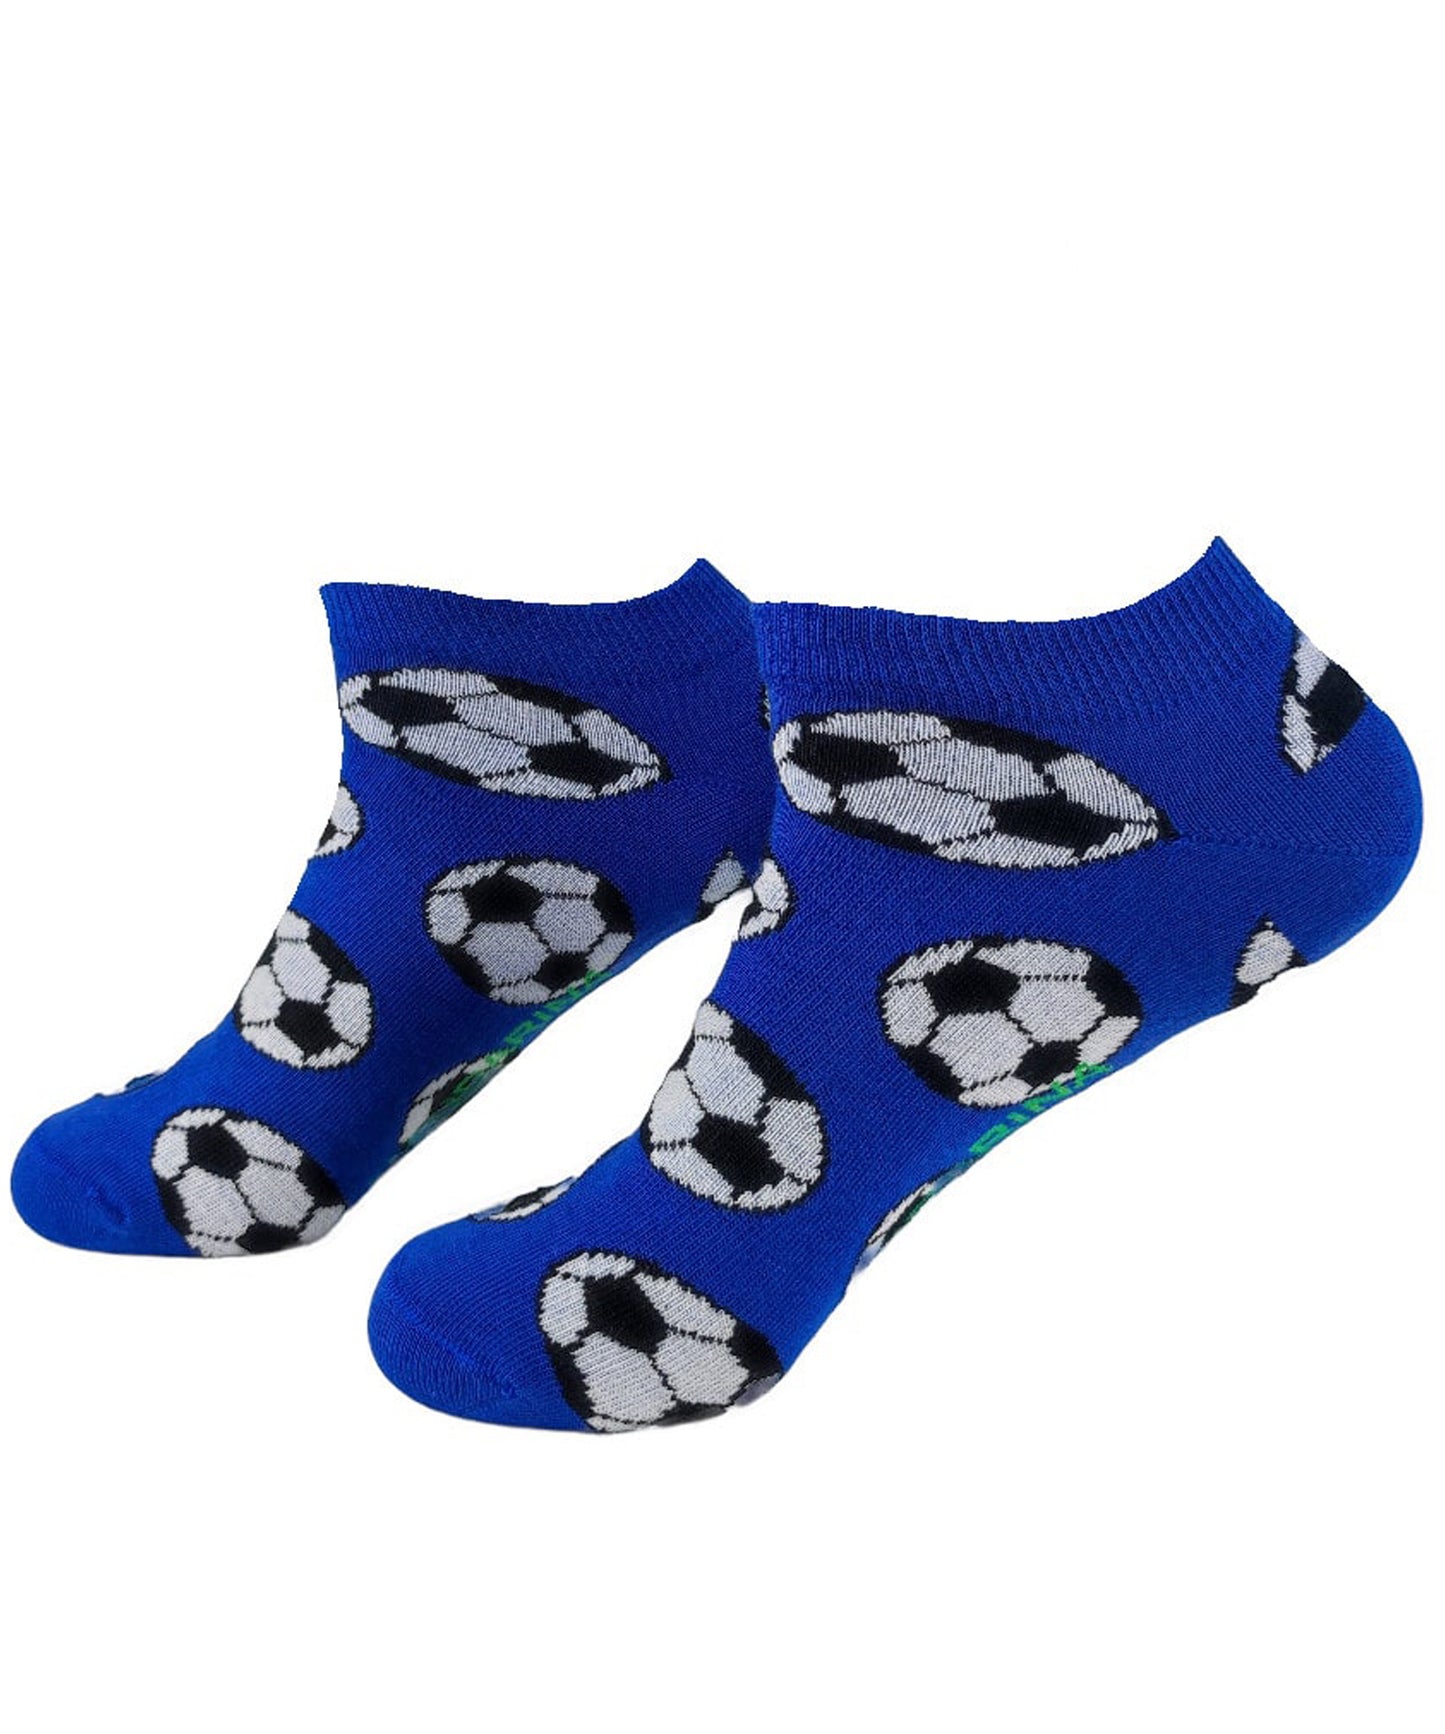 mandarina-socks-calcetines-cortos-soccer-blue-color-azul-frescos-suaves-algodón-90%